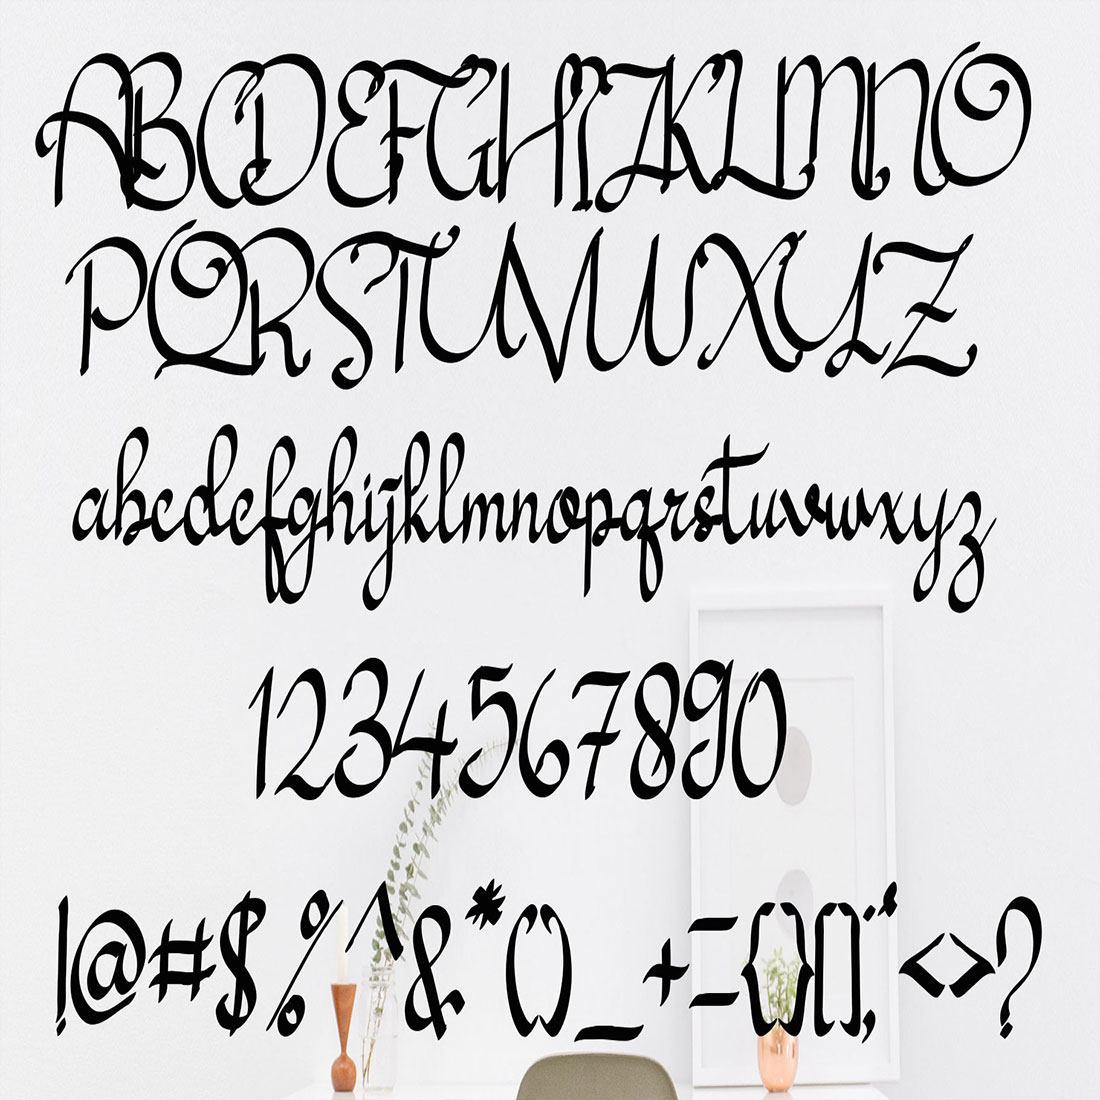 Axtaja Elang Font alphabet and punctuation preview.